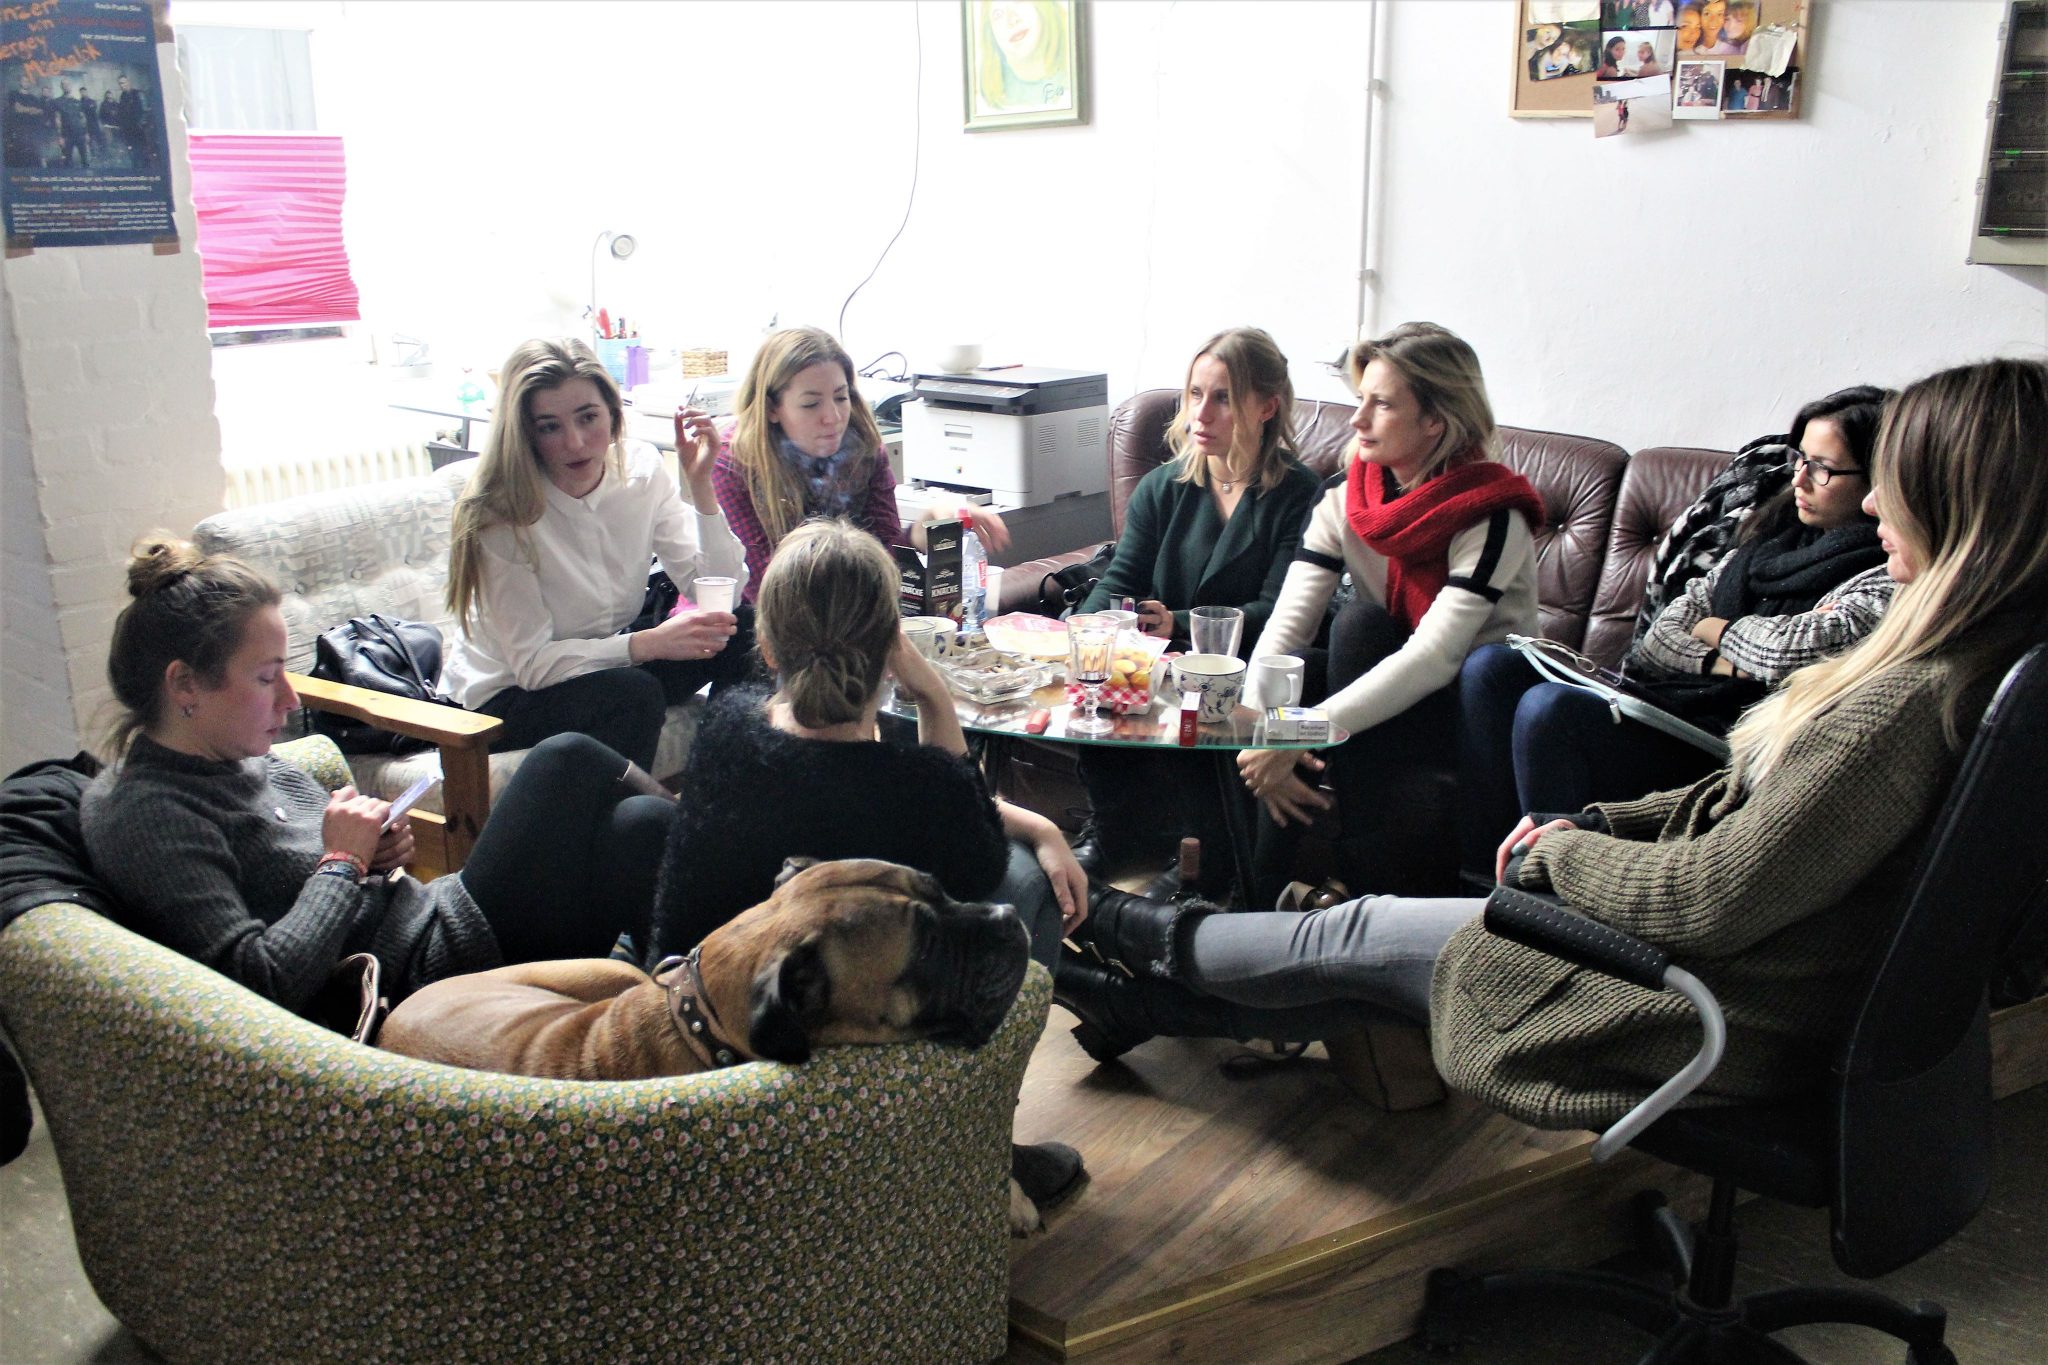 Обсуждение кинофестиваля «Kinohafen» в офисе Лены Бочановой. Фото Марии Петровой для Spektr.Press